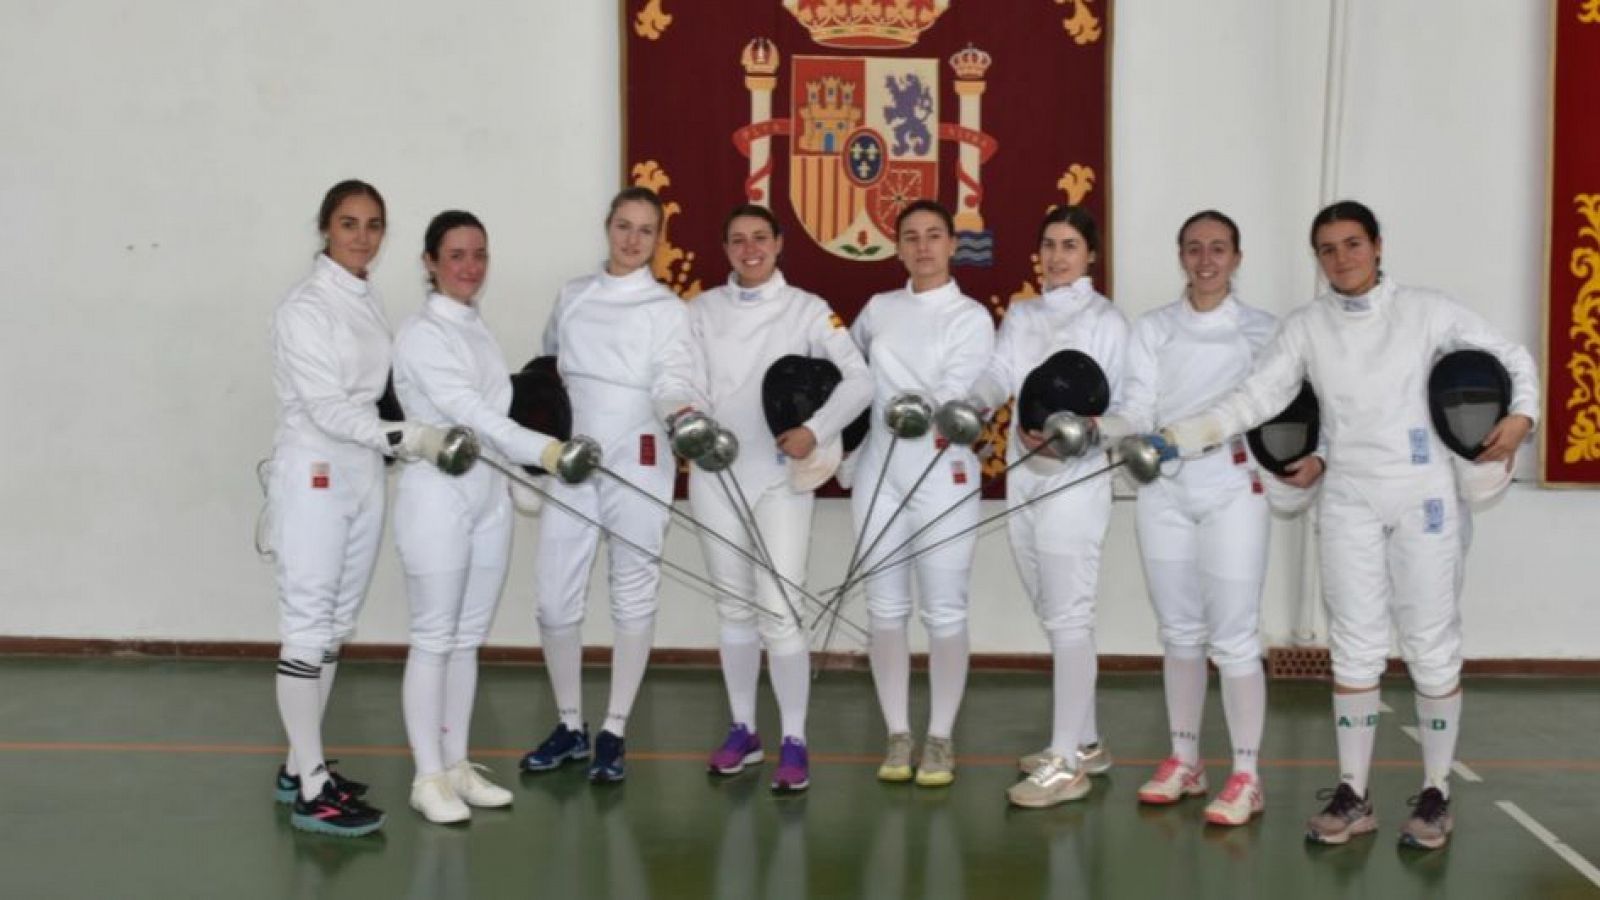 La princesa Leonor compite en un torneo de esgrima en Murcia